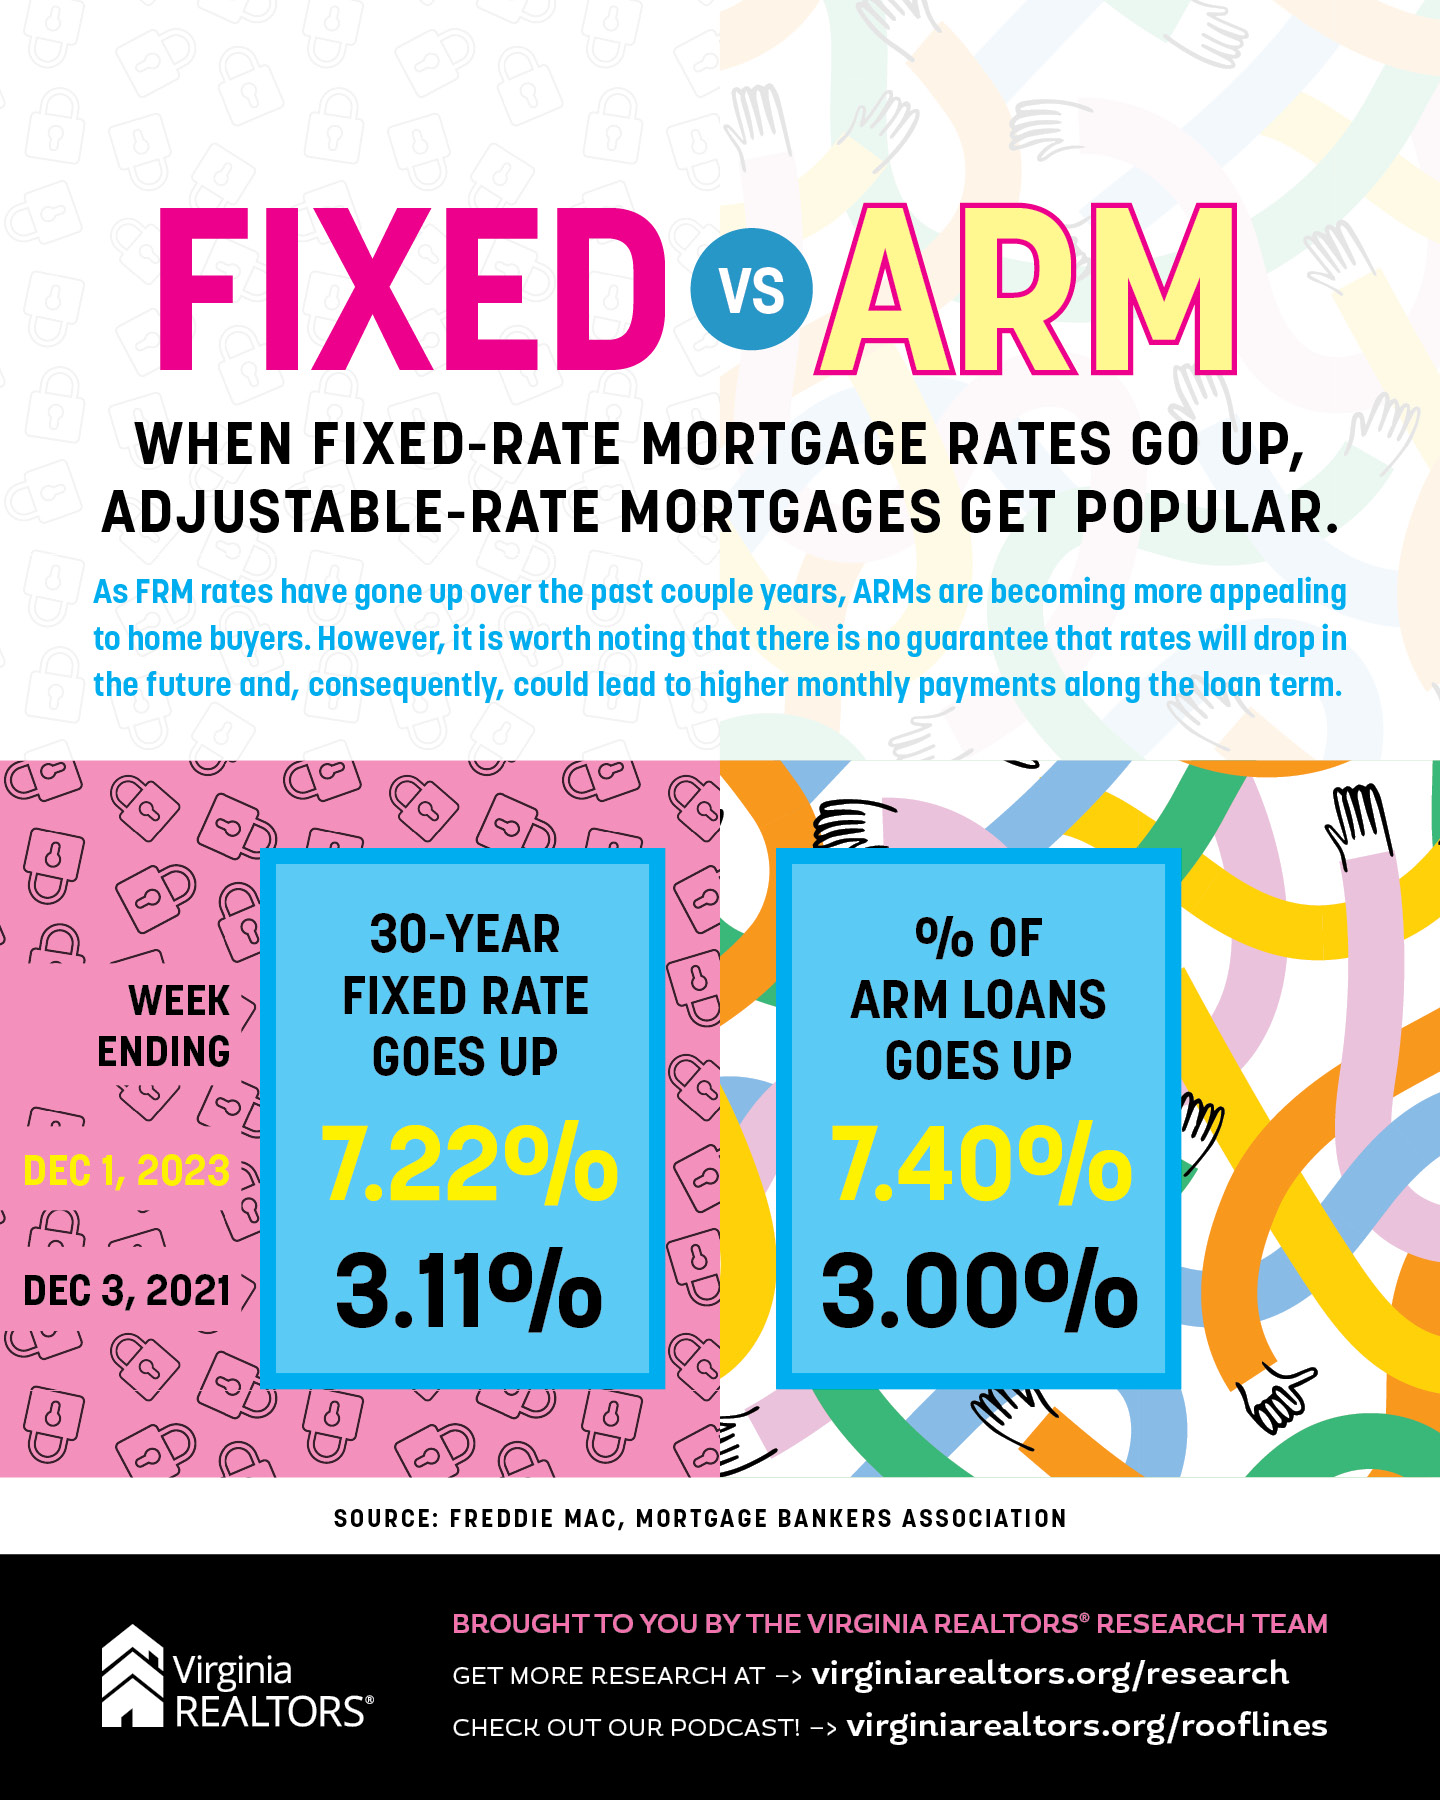 Fixed vs ARM infographic